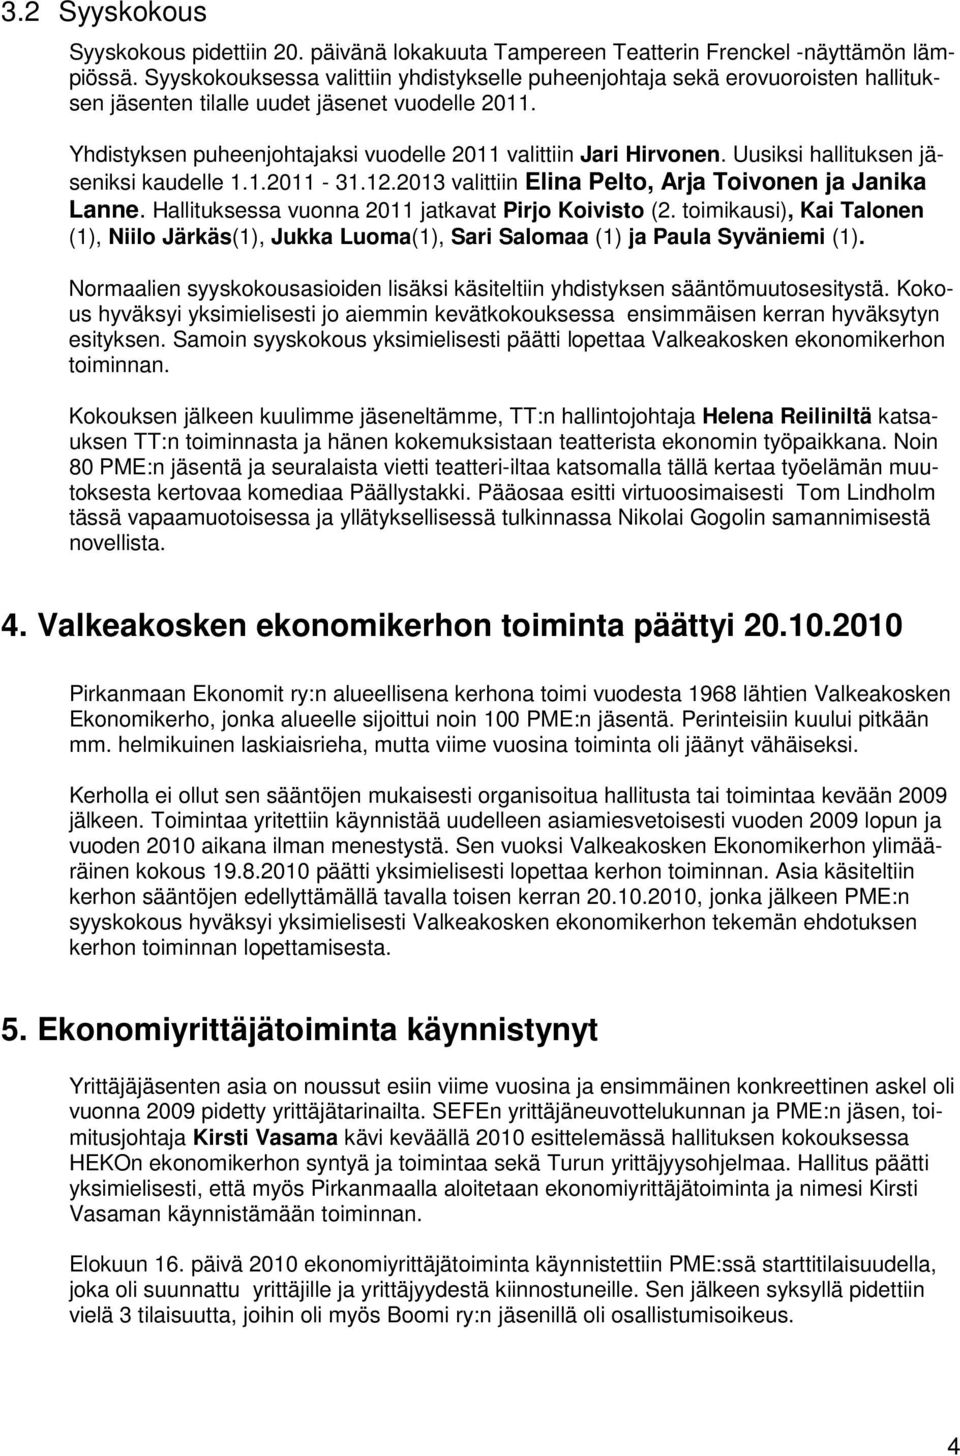 Uusiksi hallituksen jäseniksi kaudelle 1.1.2011-31.12.2013 valittiin Elina Pelto, Arja Toivonen ja Janika Lanne. Hallituksessa vuonna 2011 jatkavat Pirjo Koivisto (2.